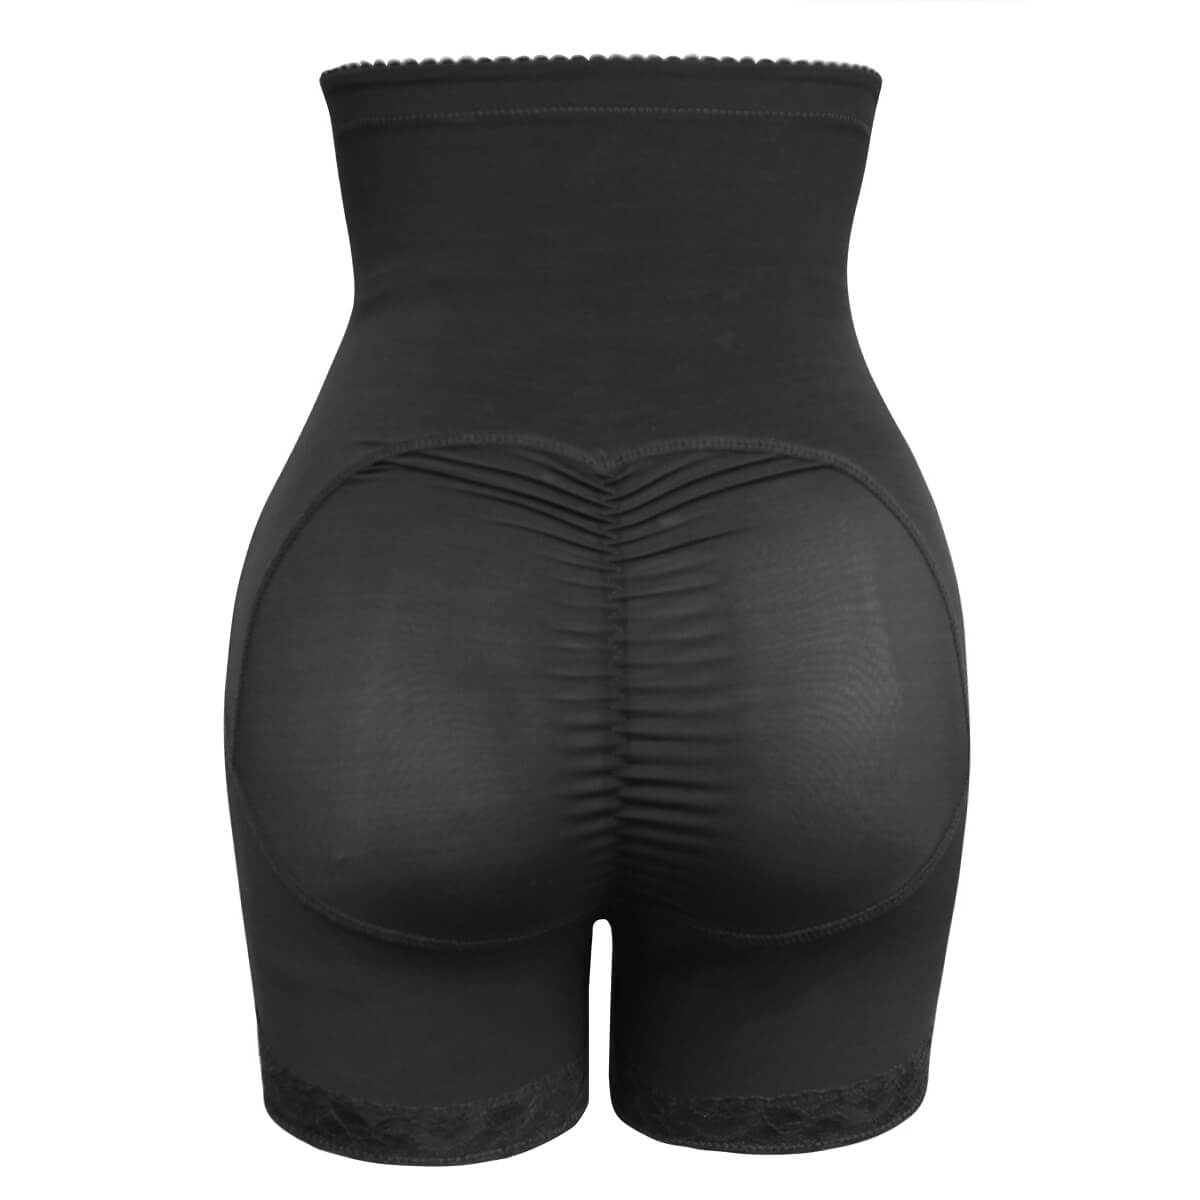 Shapewear for Women Tummy Control Butt Lifter High Waist